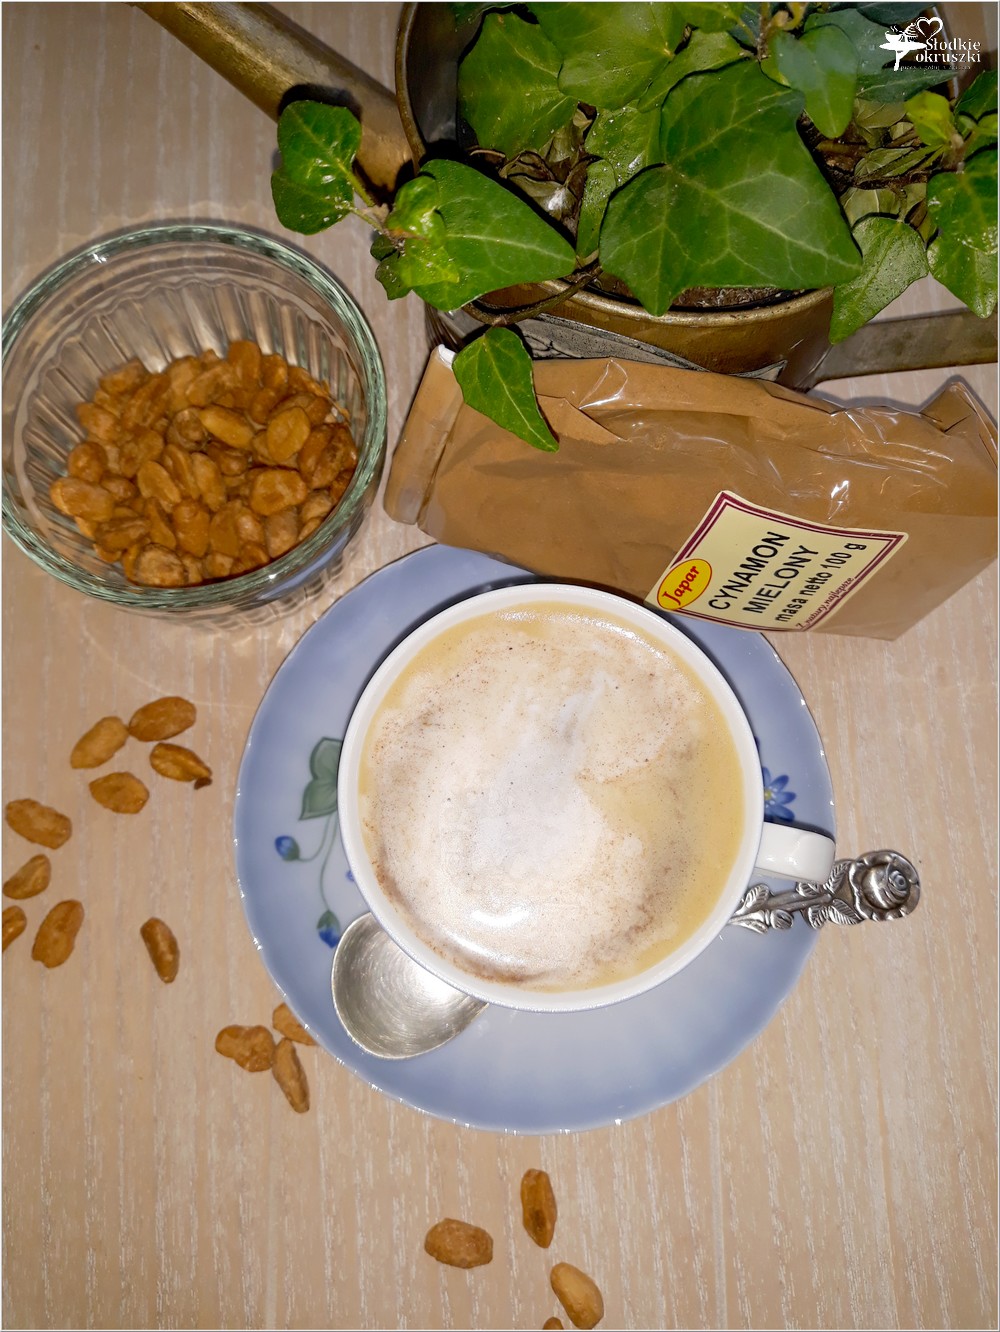 Karmelowa kawa z cynamonową pianką (2)